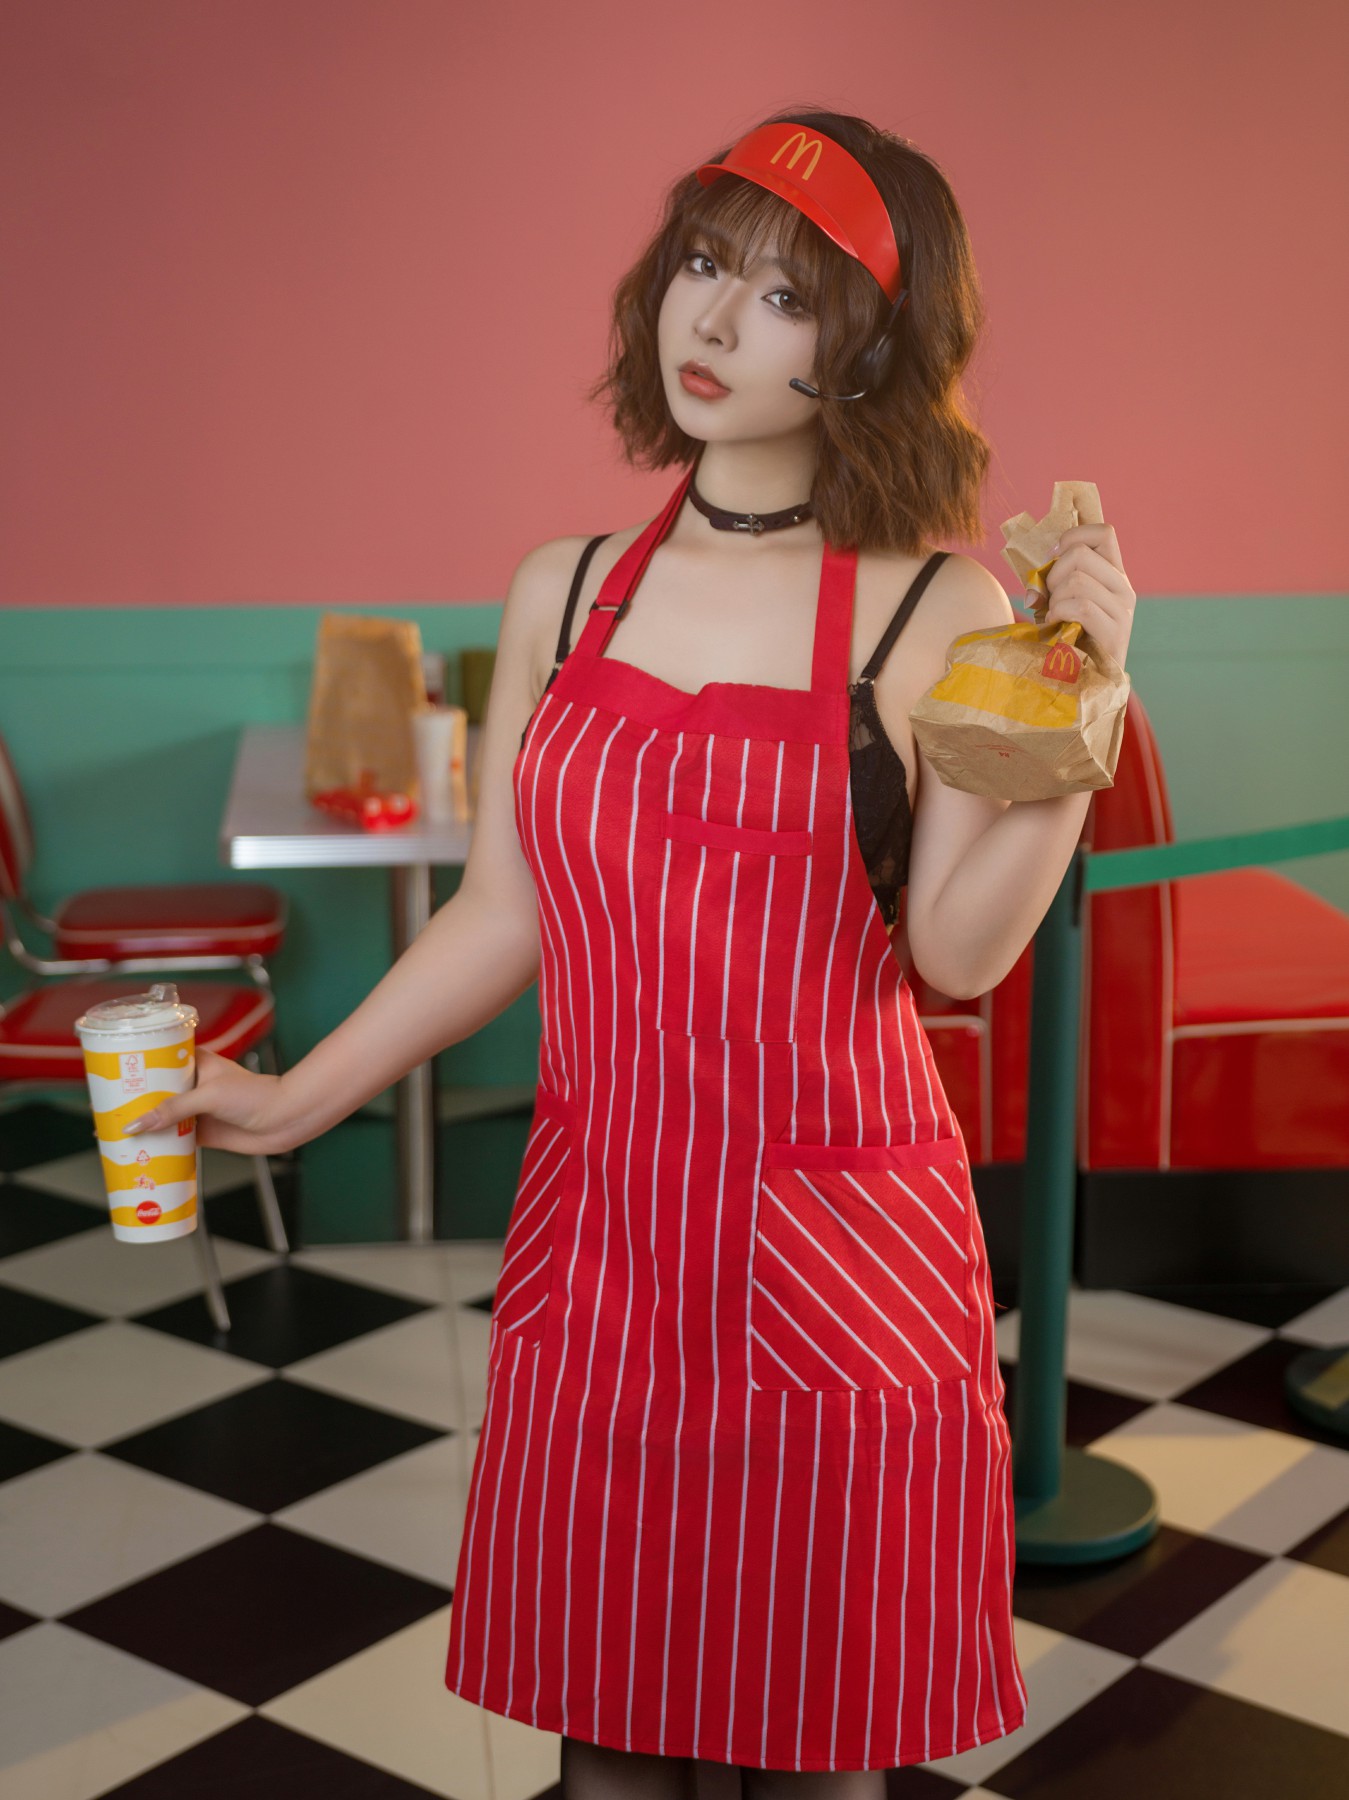 yuuhui玉汇 – 麦当劳的女服务员